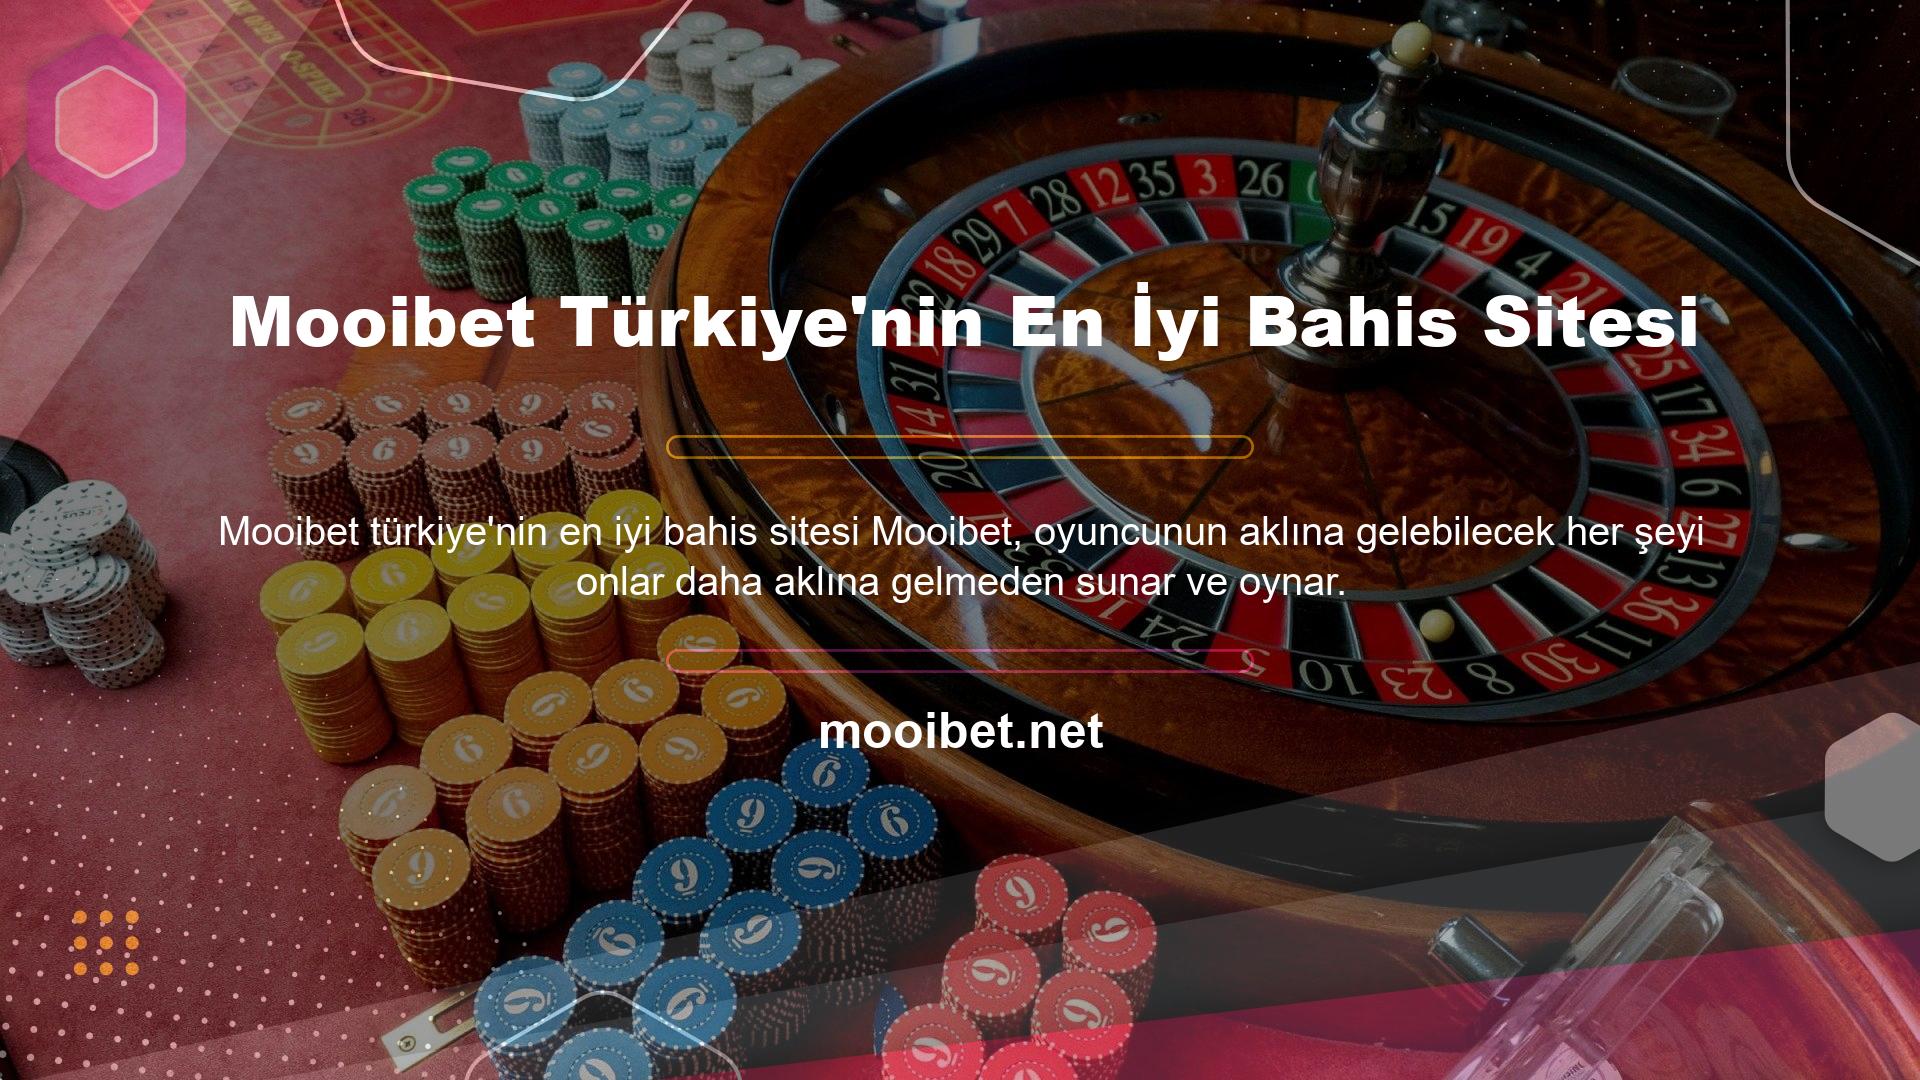 Mooibet Türkiye'nin En İyi Bahis Sitesi